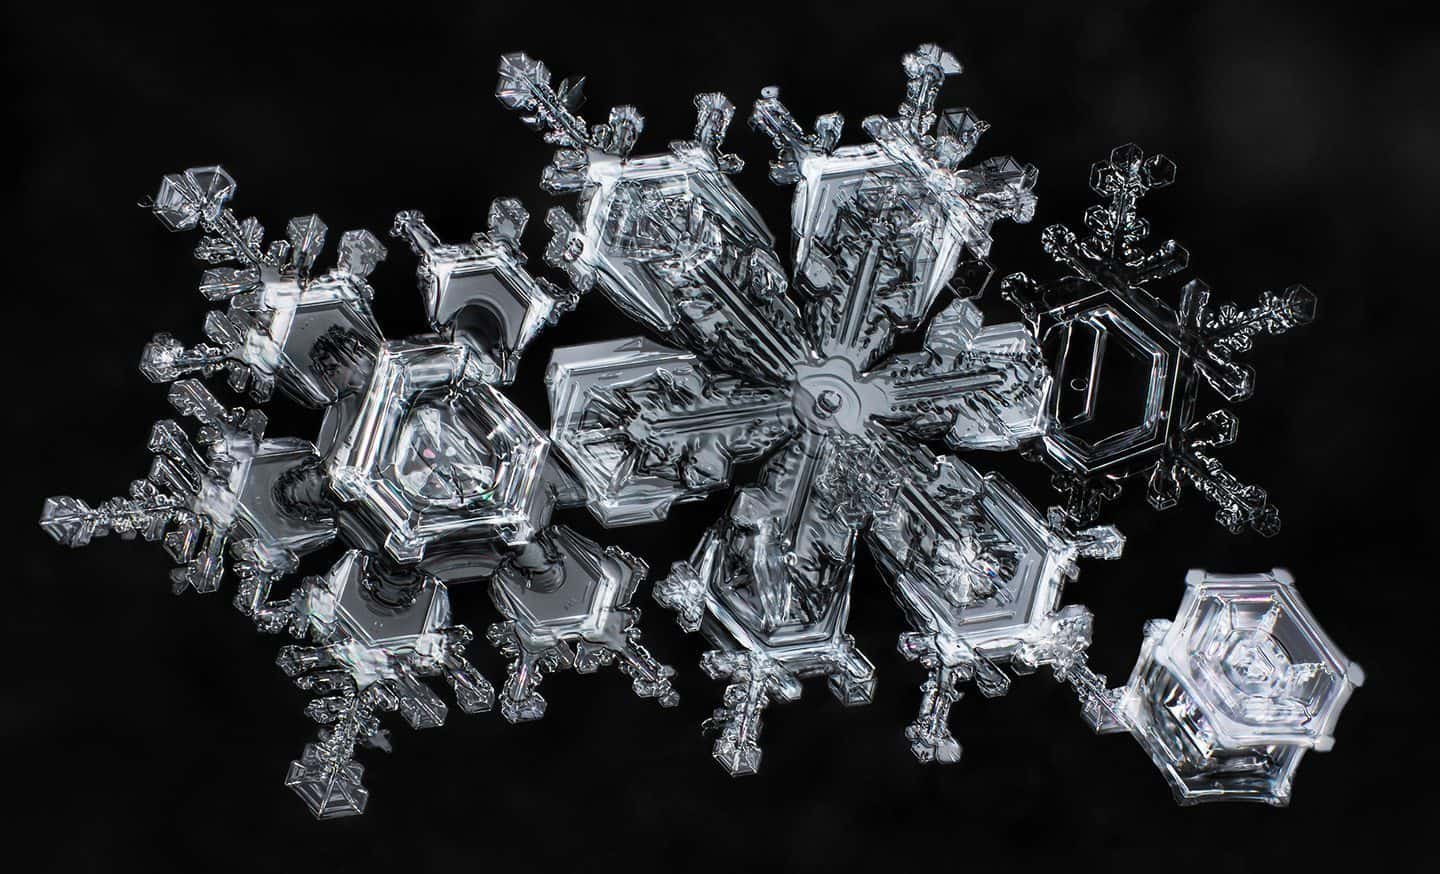 Snowflakes © Don Komarechka